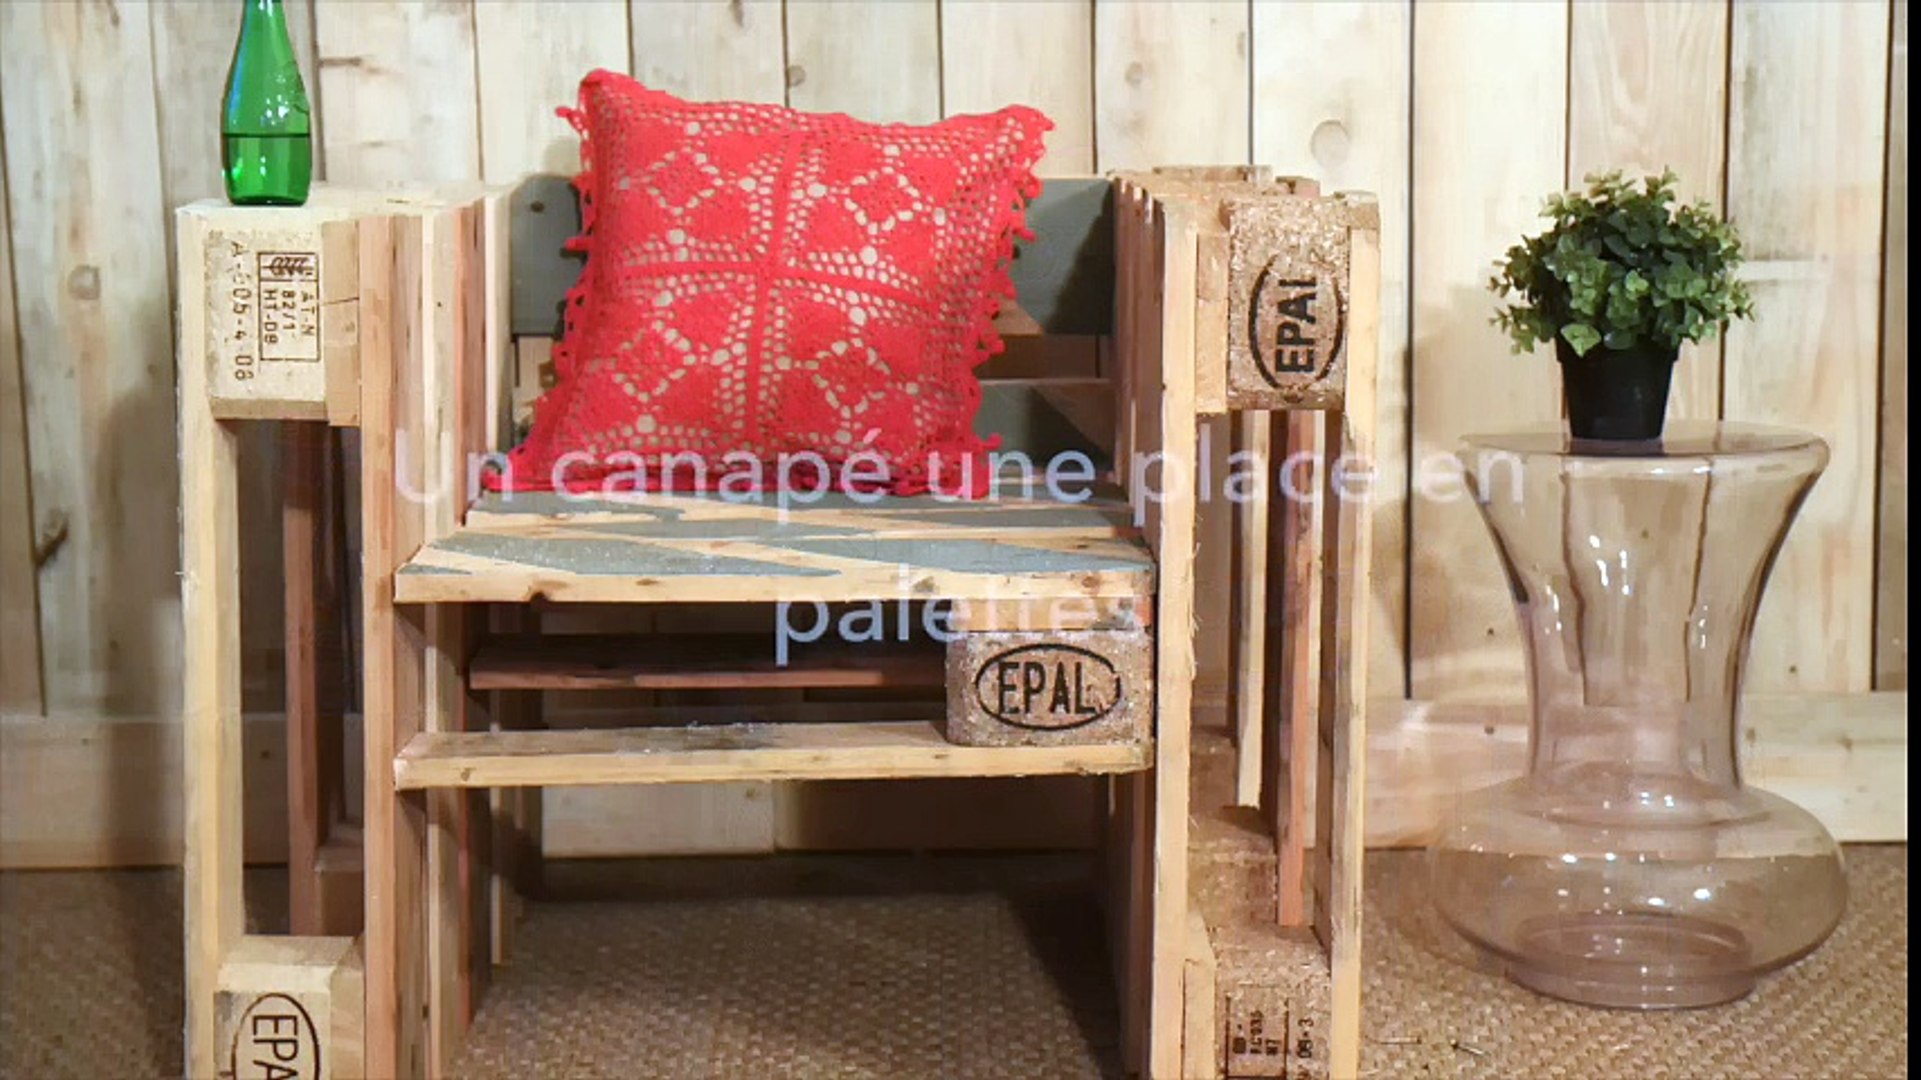 DIY : Fabriquer un canapé 1 place en palettes - Vidéo Dailymotion